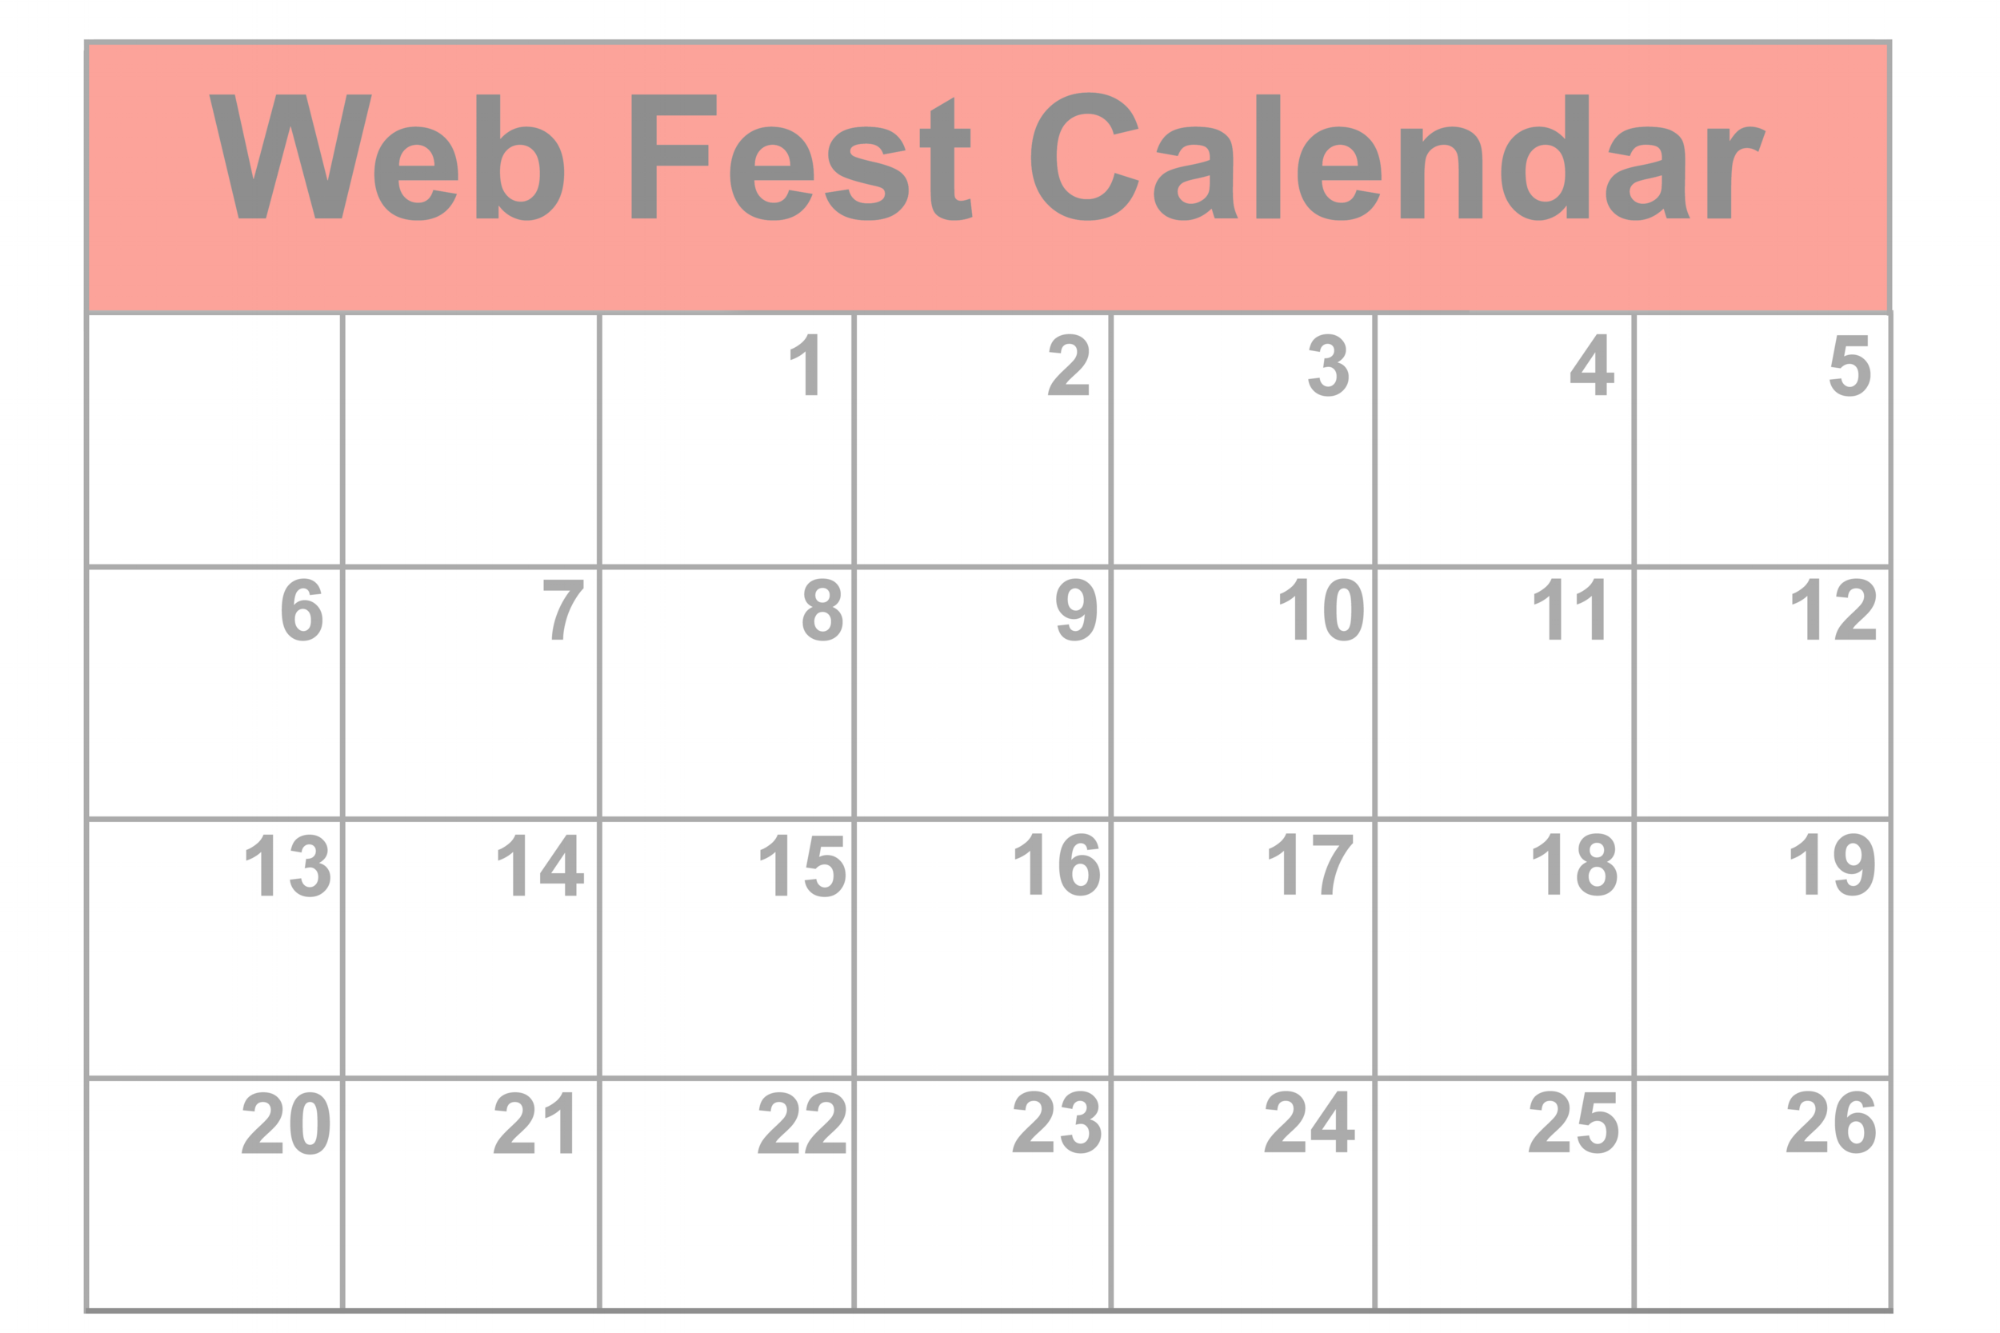 Check out the Web Fest Calendar (Copy)